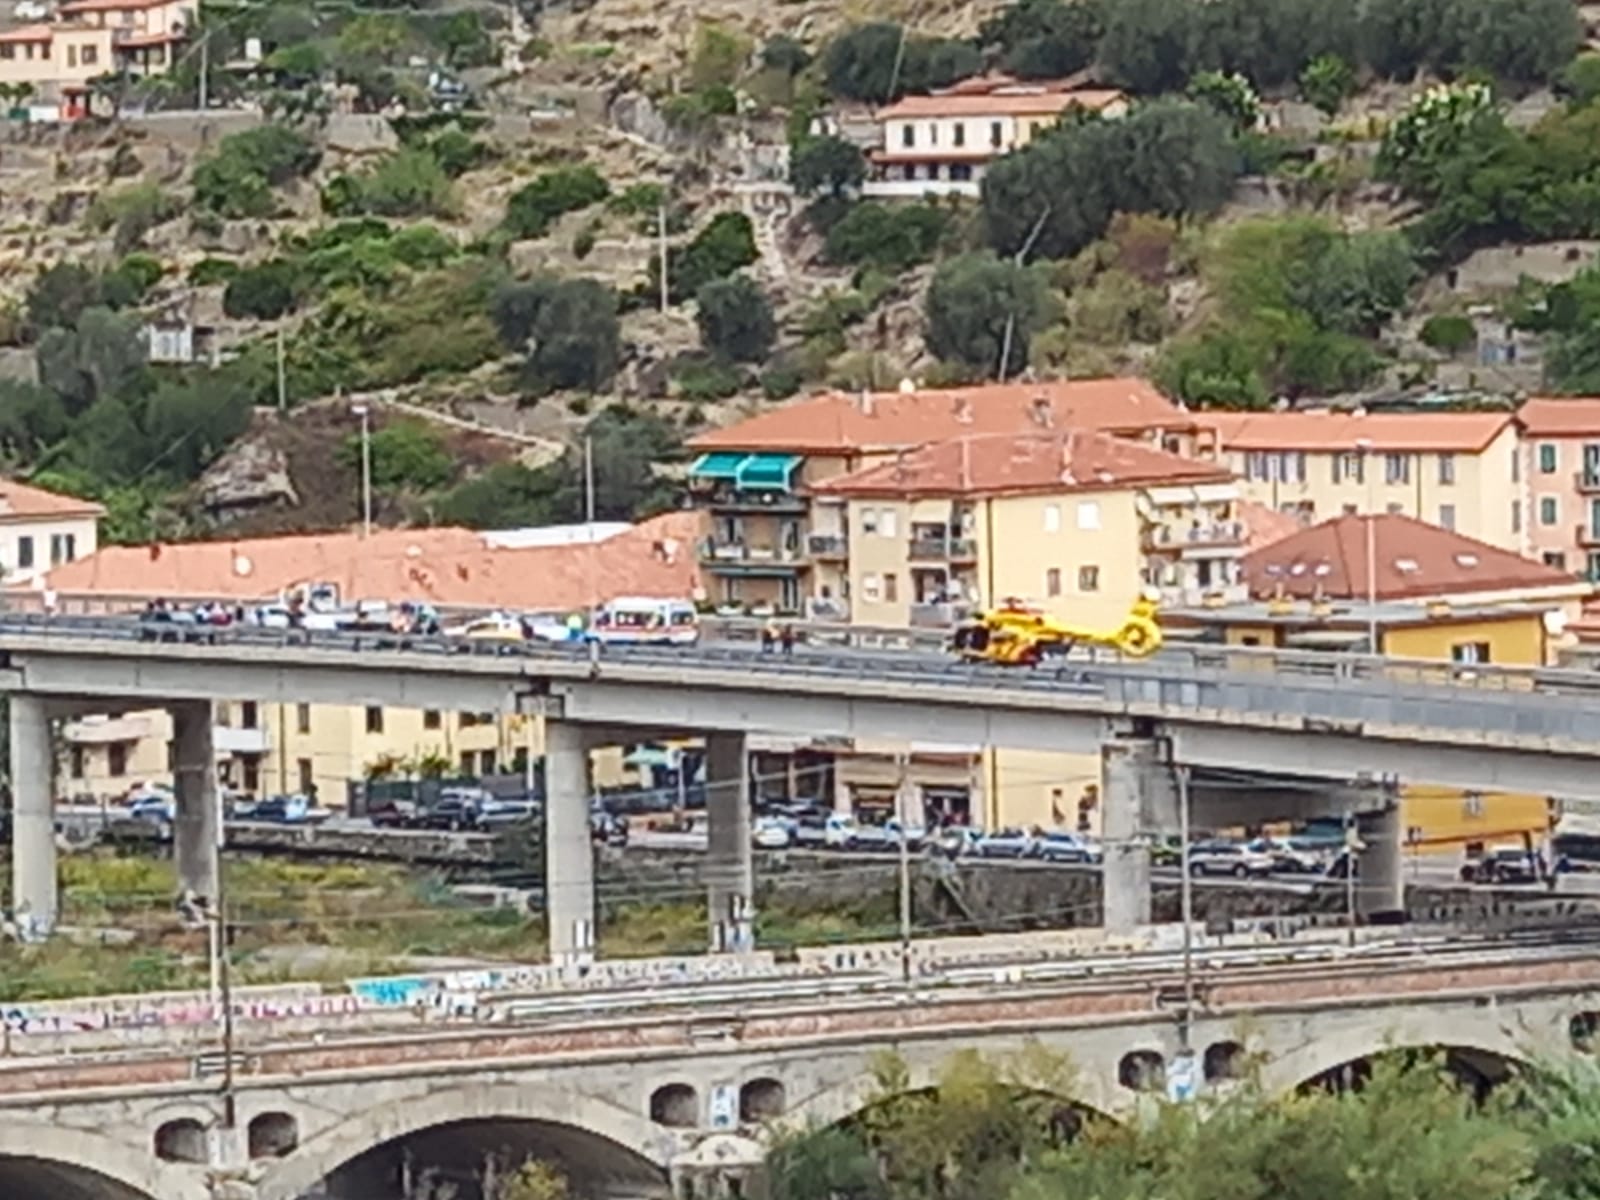 Incidente scooter auto cavalcavia Ventimiglia